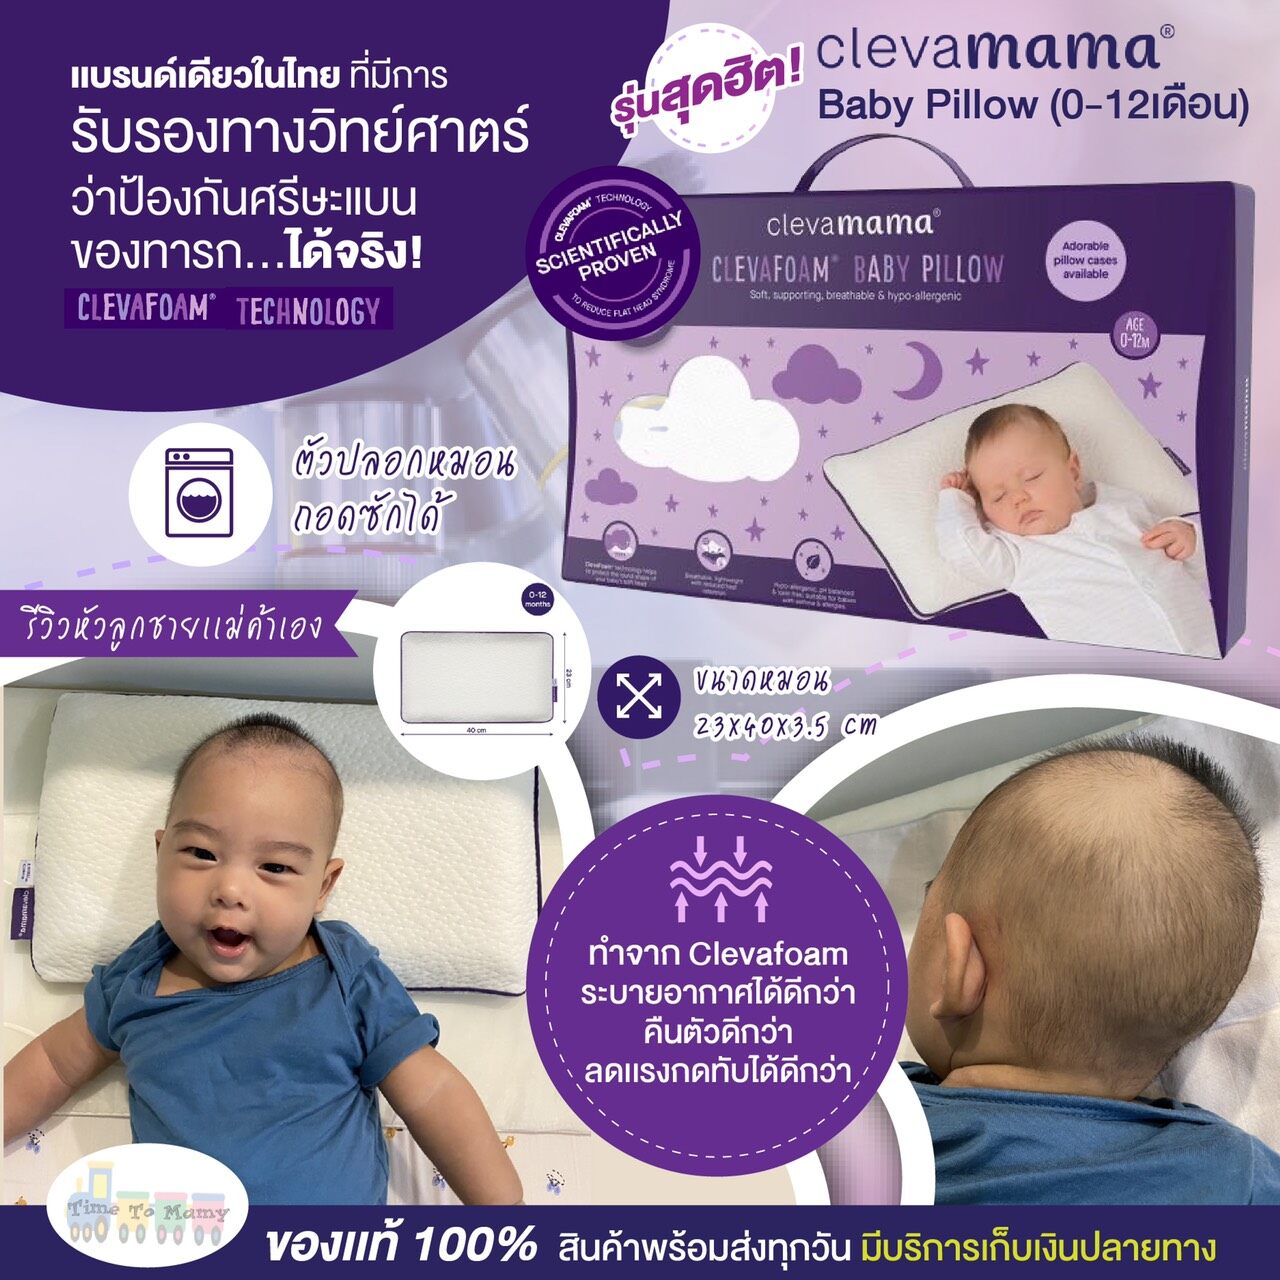 ซื้อที่ไหน Clevamama หมอนหัวทุย หมอนกันหัวแบน หมอนเด็กทารก รุ่นBaby Pillow(0-12เดือน) ขนาด23x40x3.5cm. หมอนนิ่มมากลูกหลับยาวสบาย [ของแท้100%]